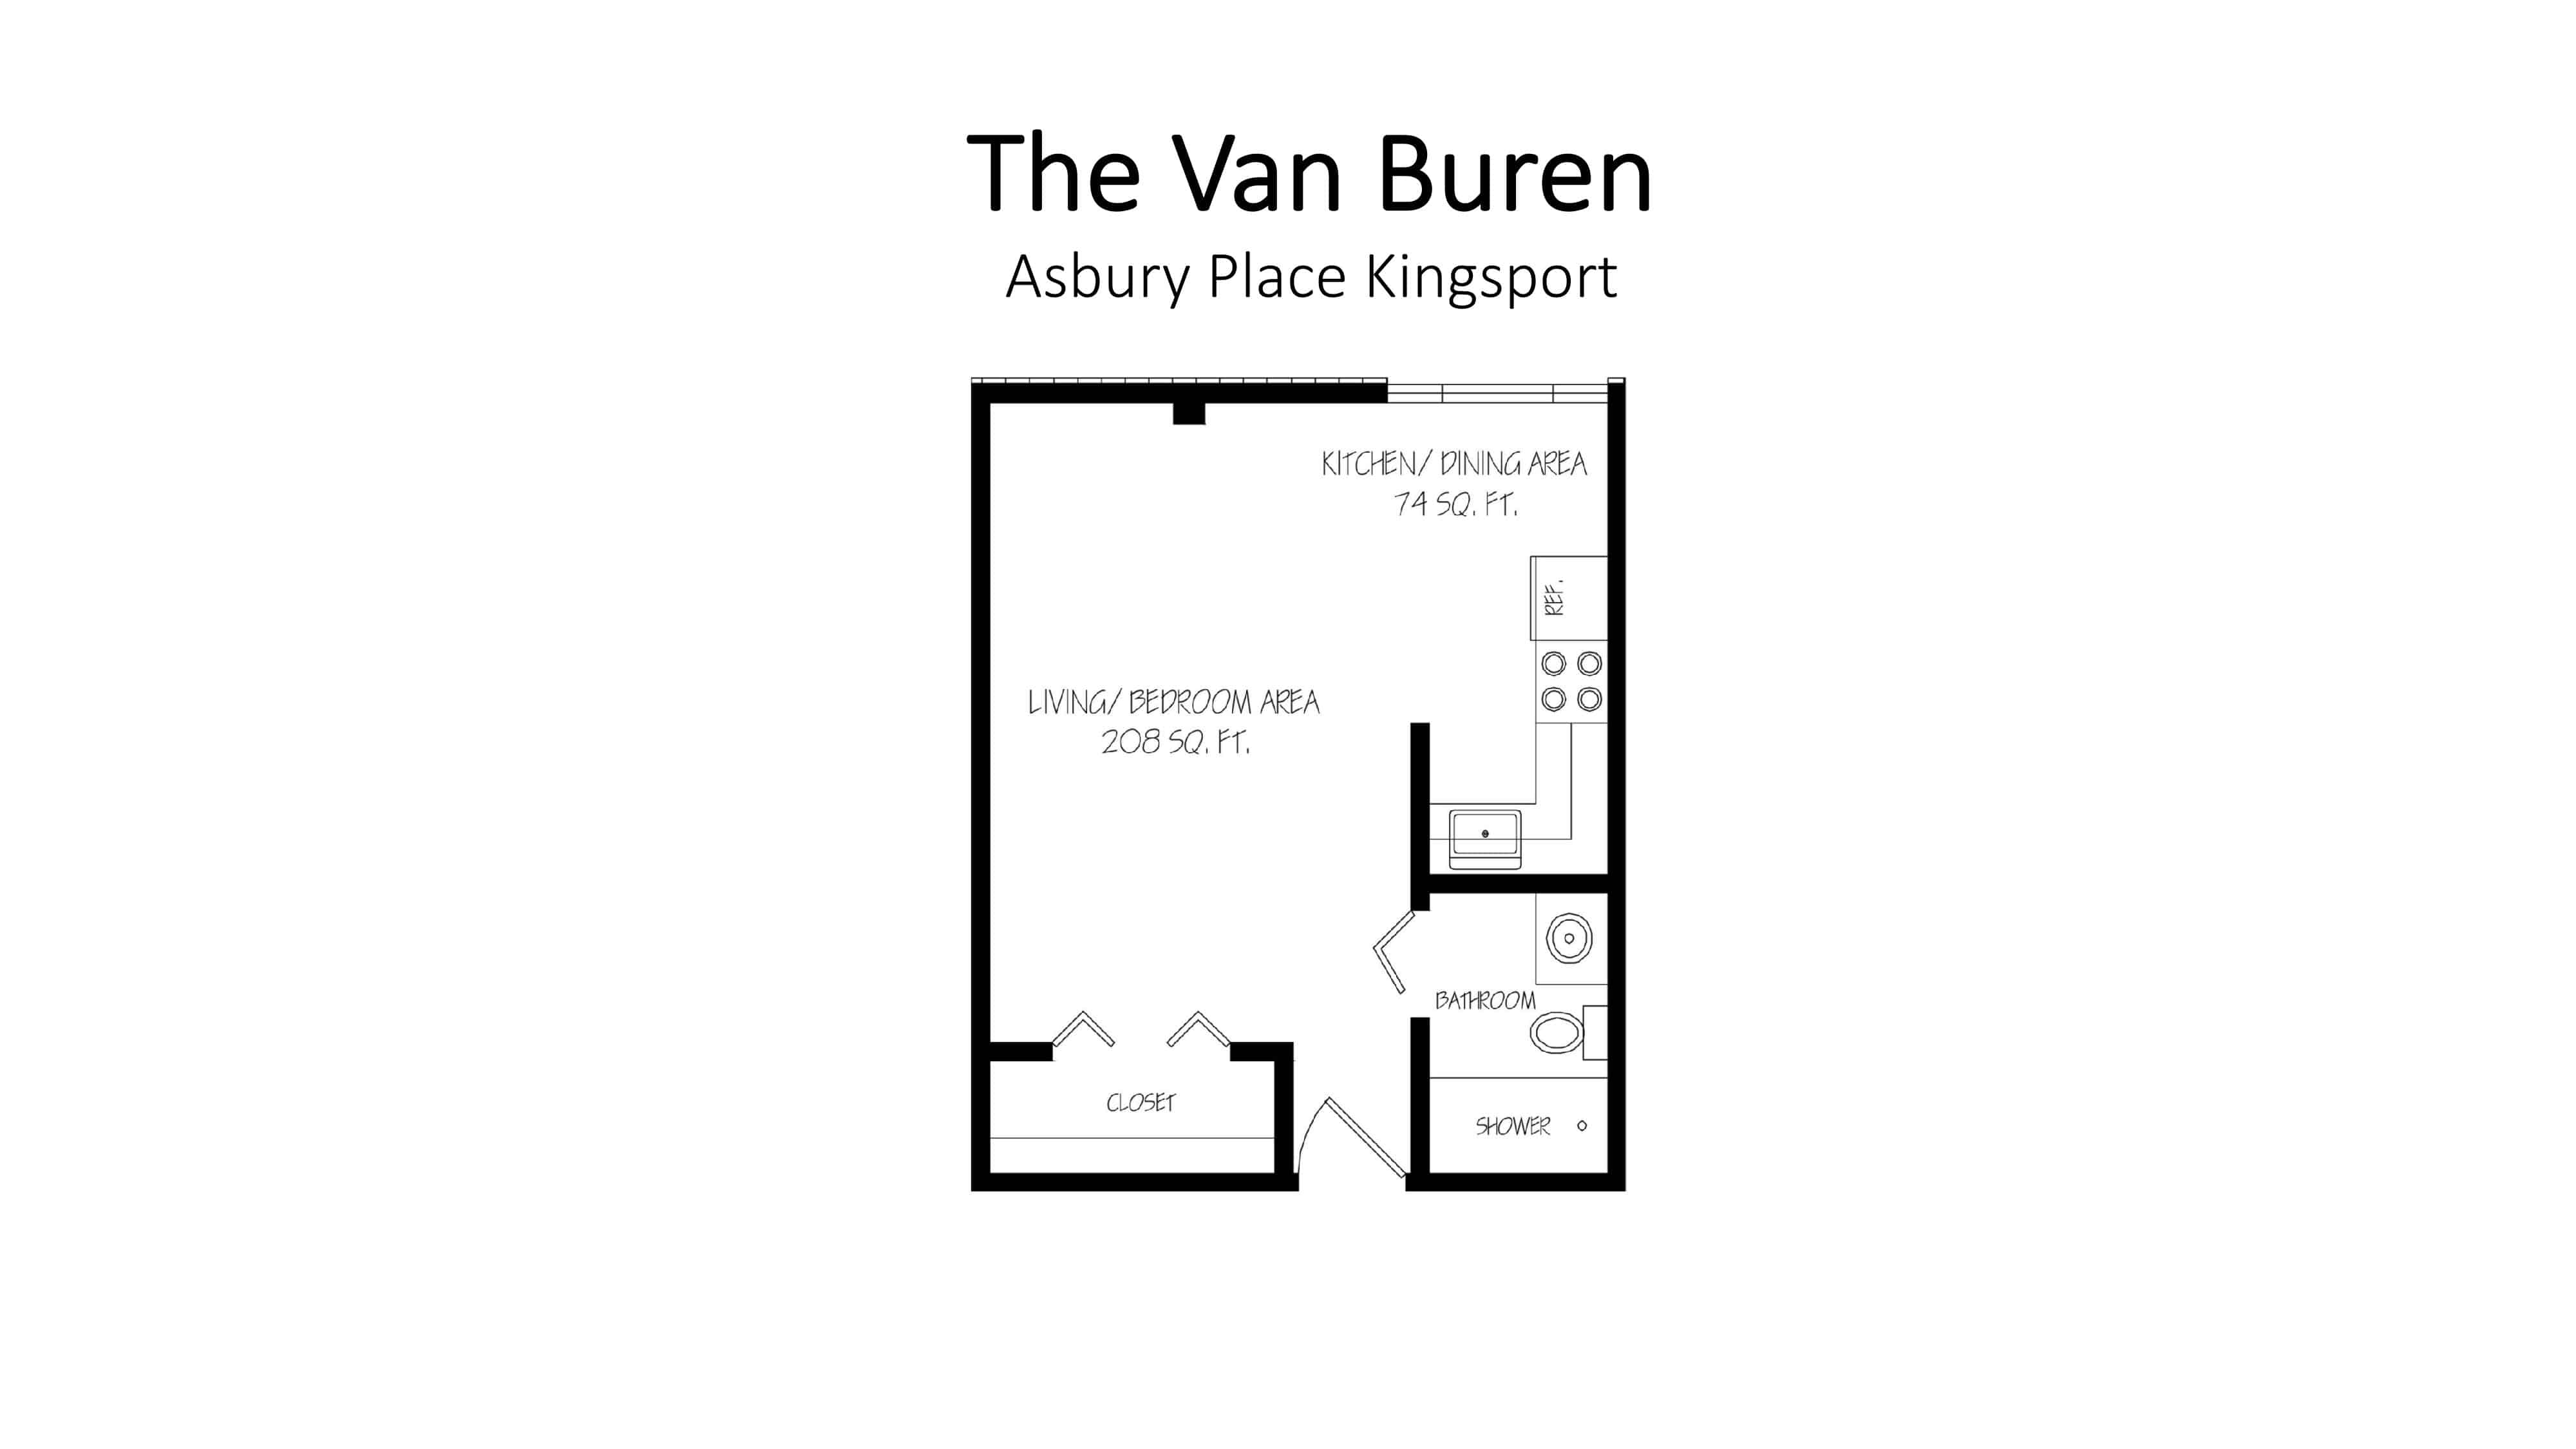 Asbury Place Kingsport The Van Buren Floorplan